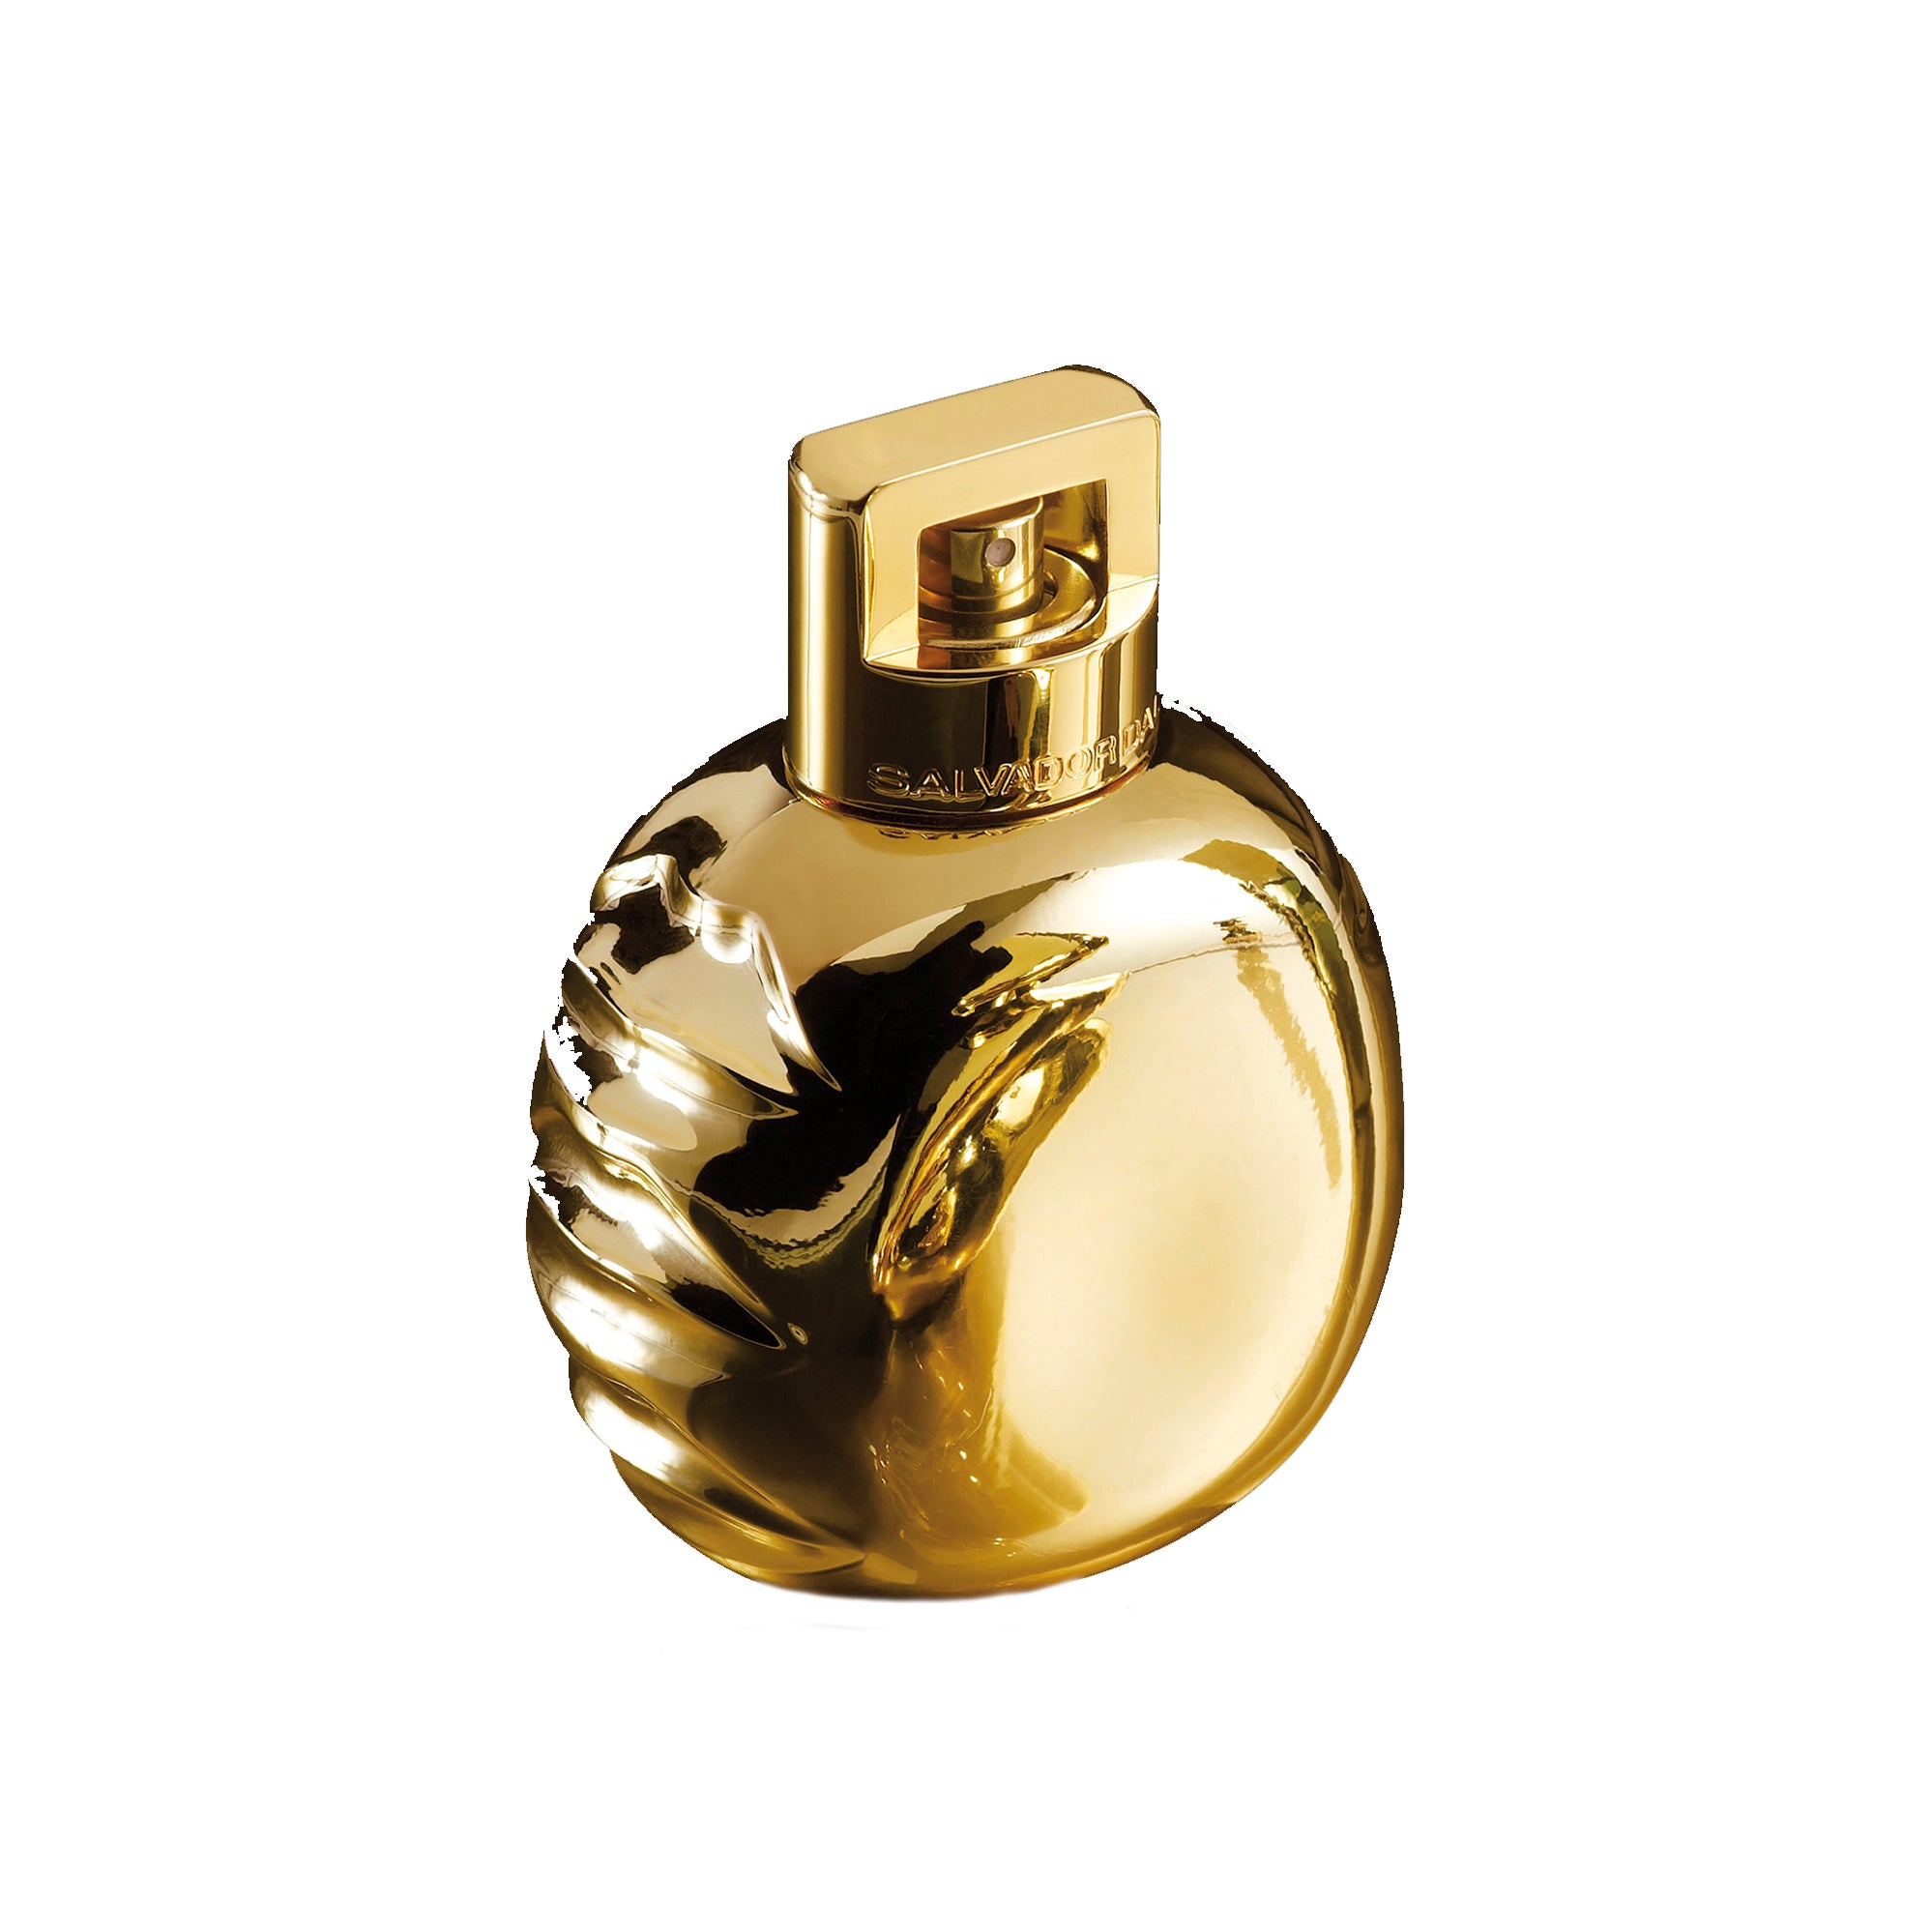 Mandawa 100ml Eau de Parfum Bottle by Dalí Haute Parfumerie